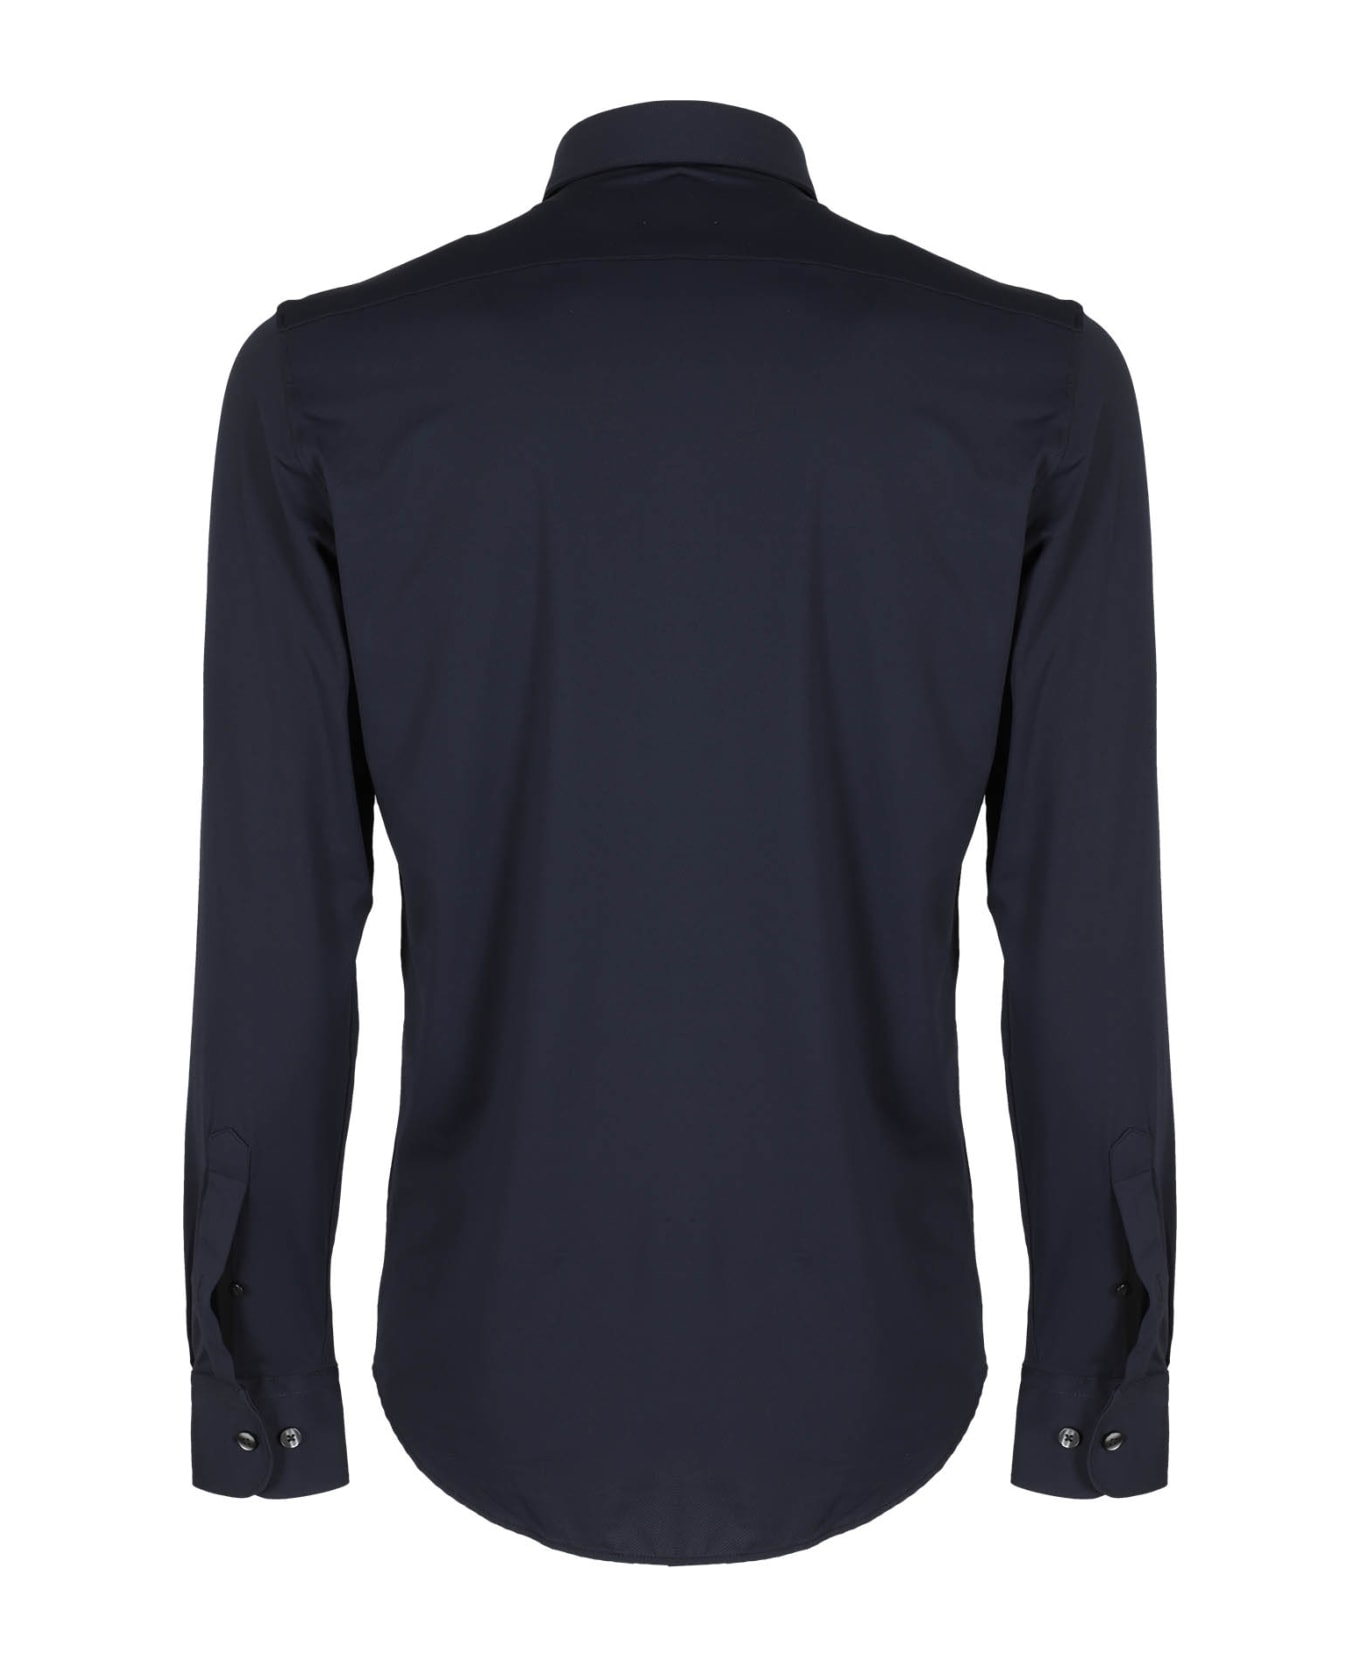 RRD - Roberto Ricci Design Oxford Oper Shirt - Blu Oltremare